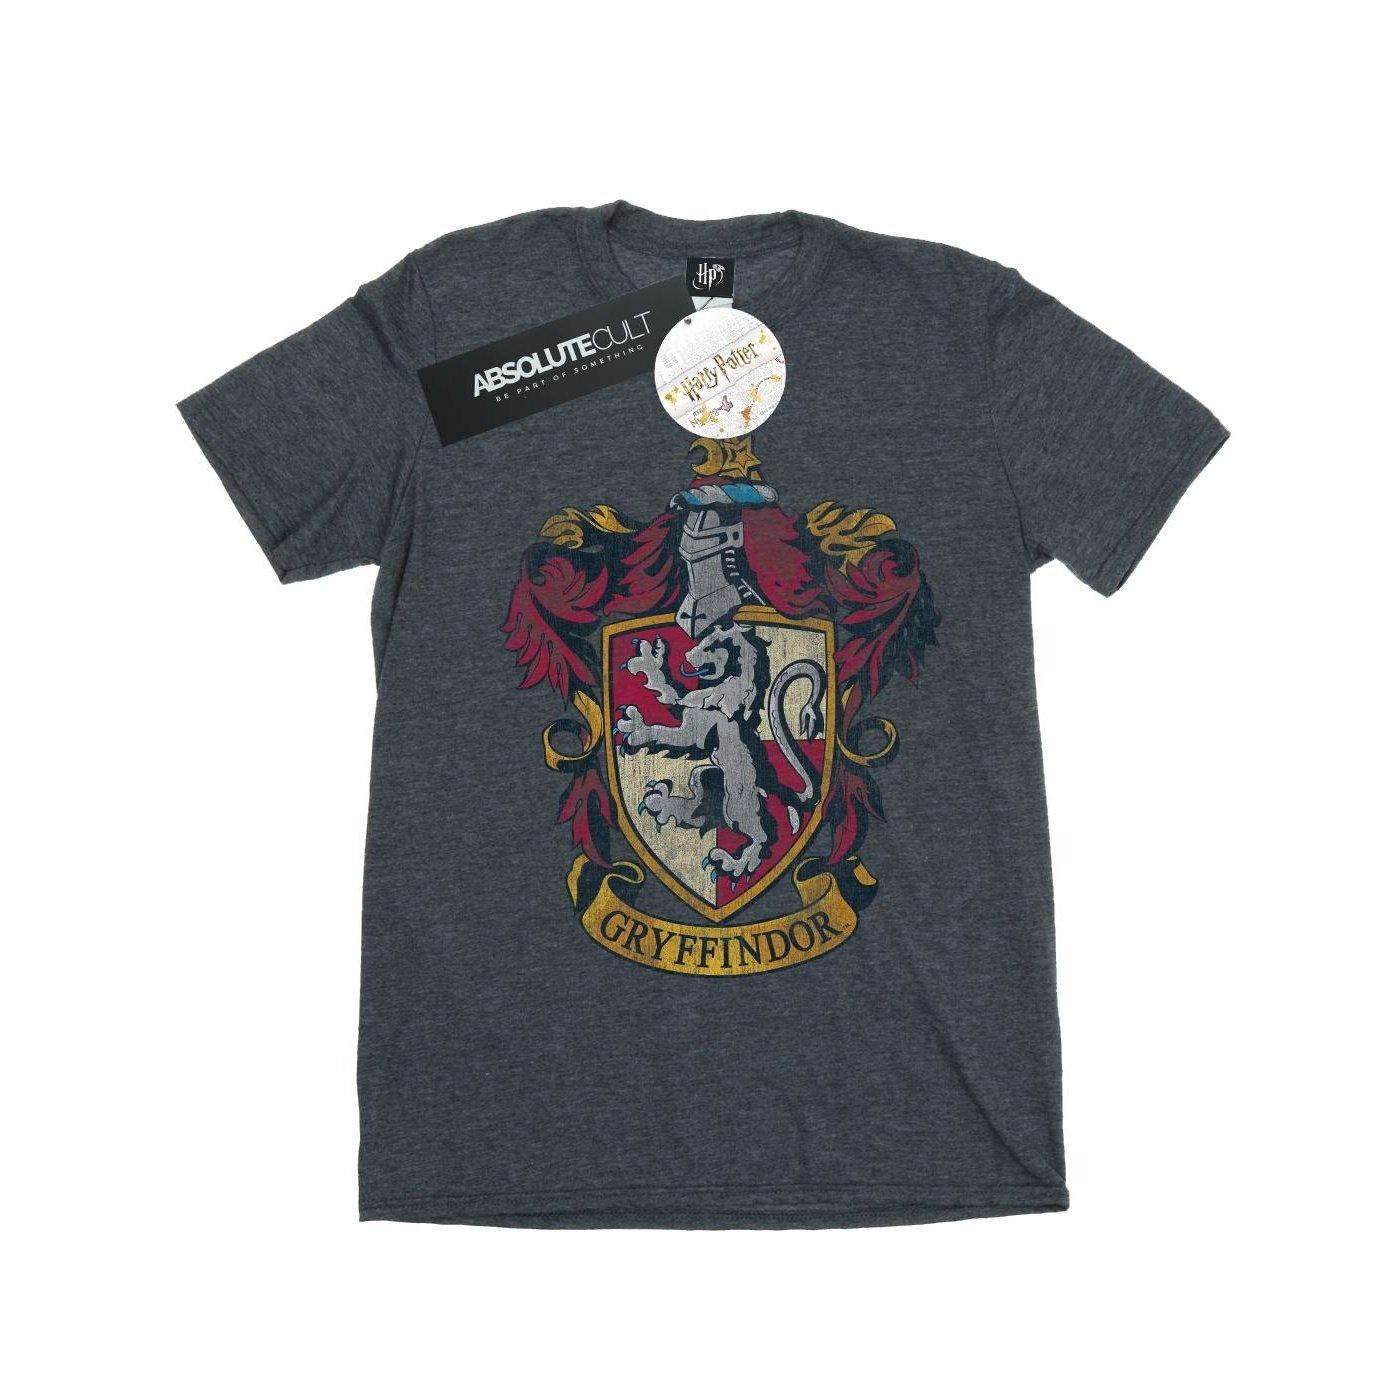 Tshirt Unisex Taubengrau 116 von Harry Potter